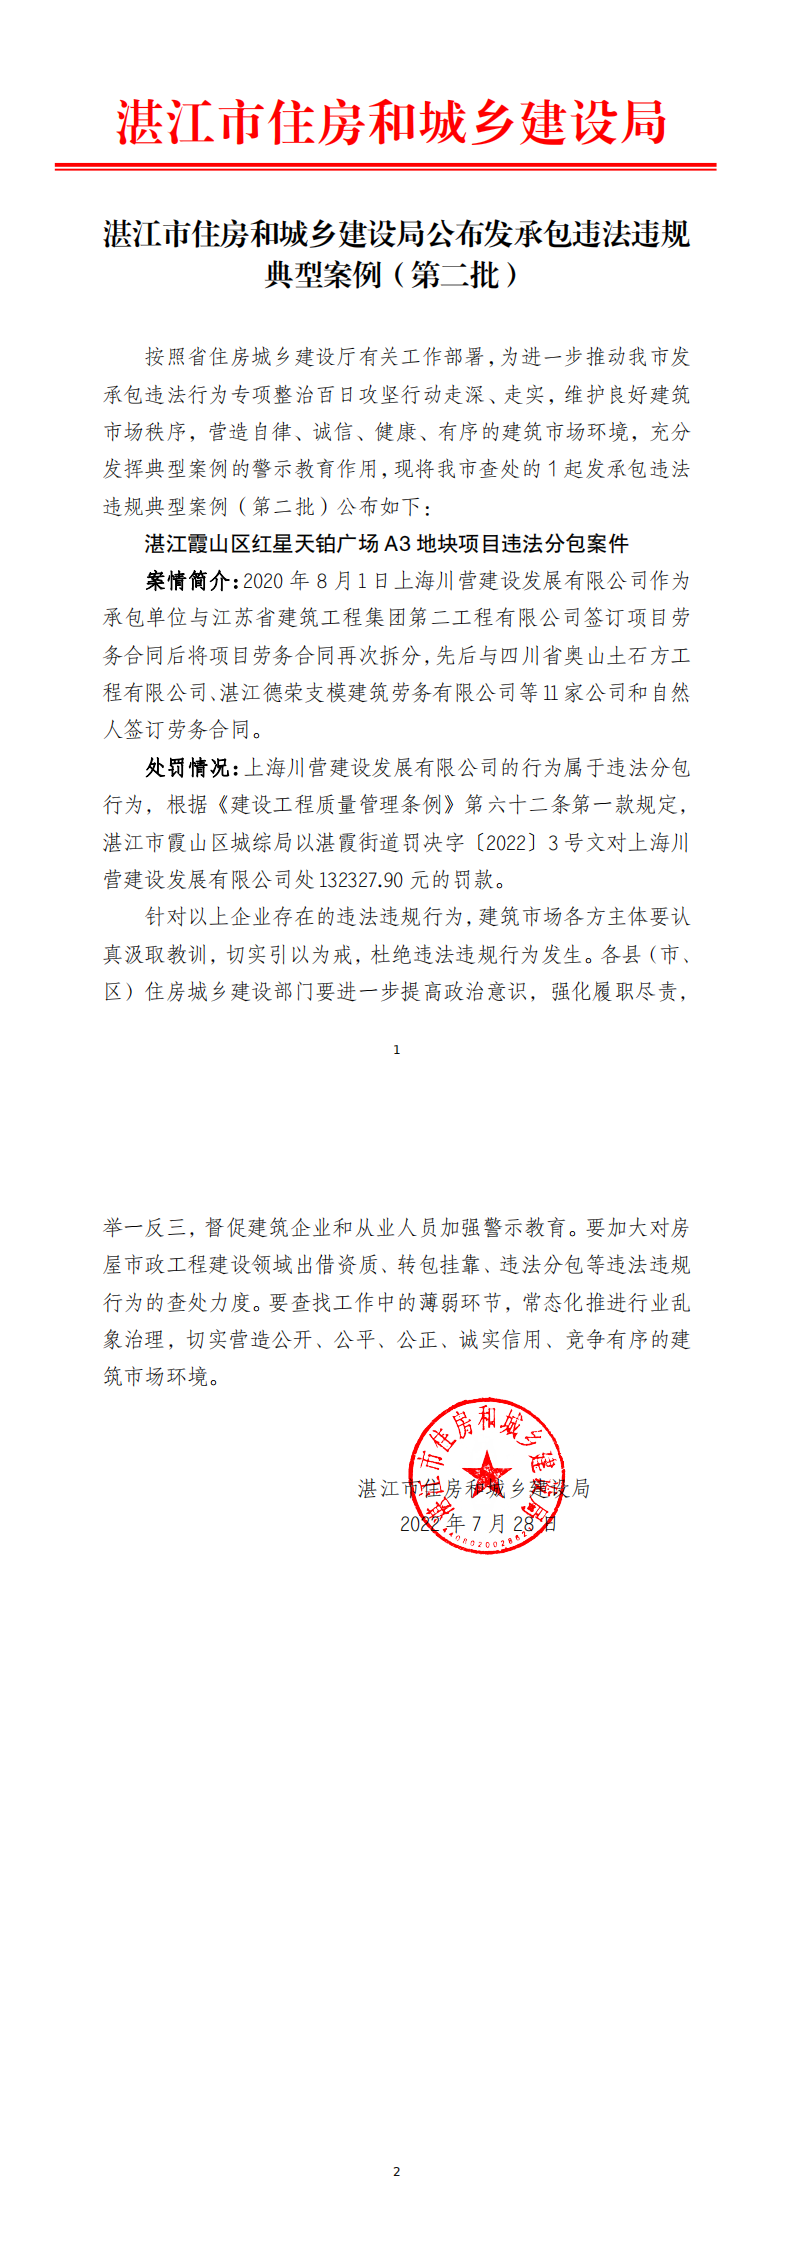 湛江市住房和城乡建设局公布发承包违法违规典型案例（第二批）_0.png